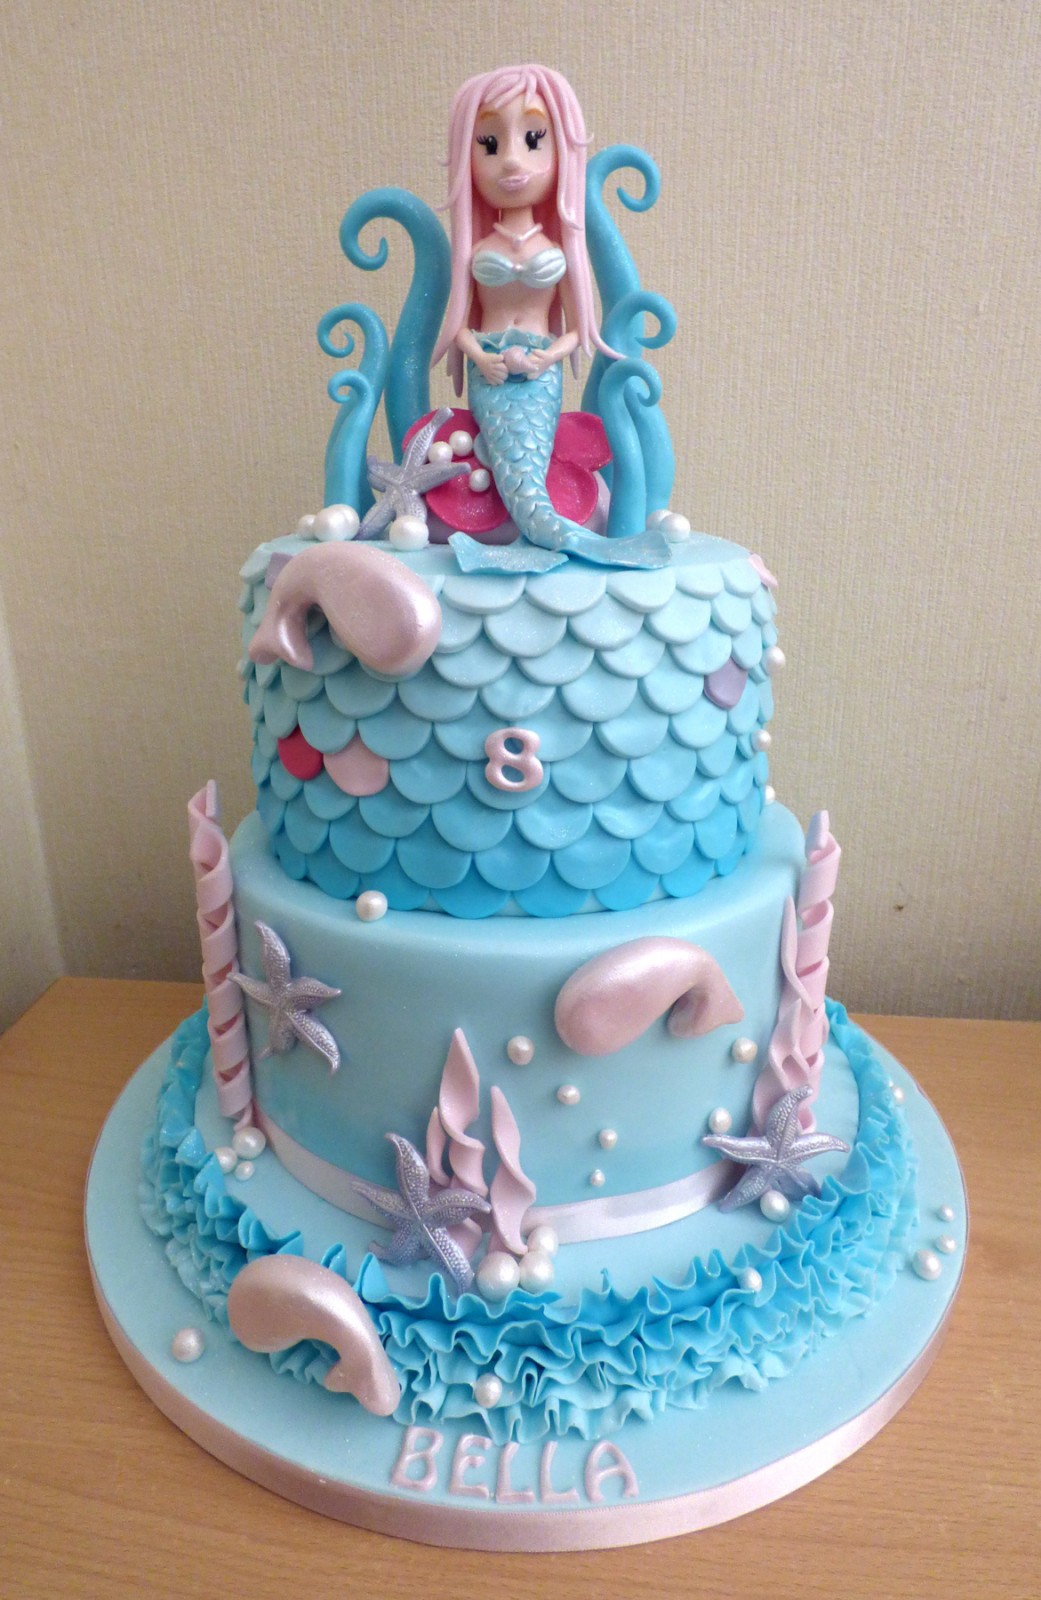 2 Tier Sparkling Mermaid Birthday Cake « Susie's Cakes